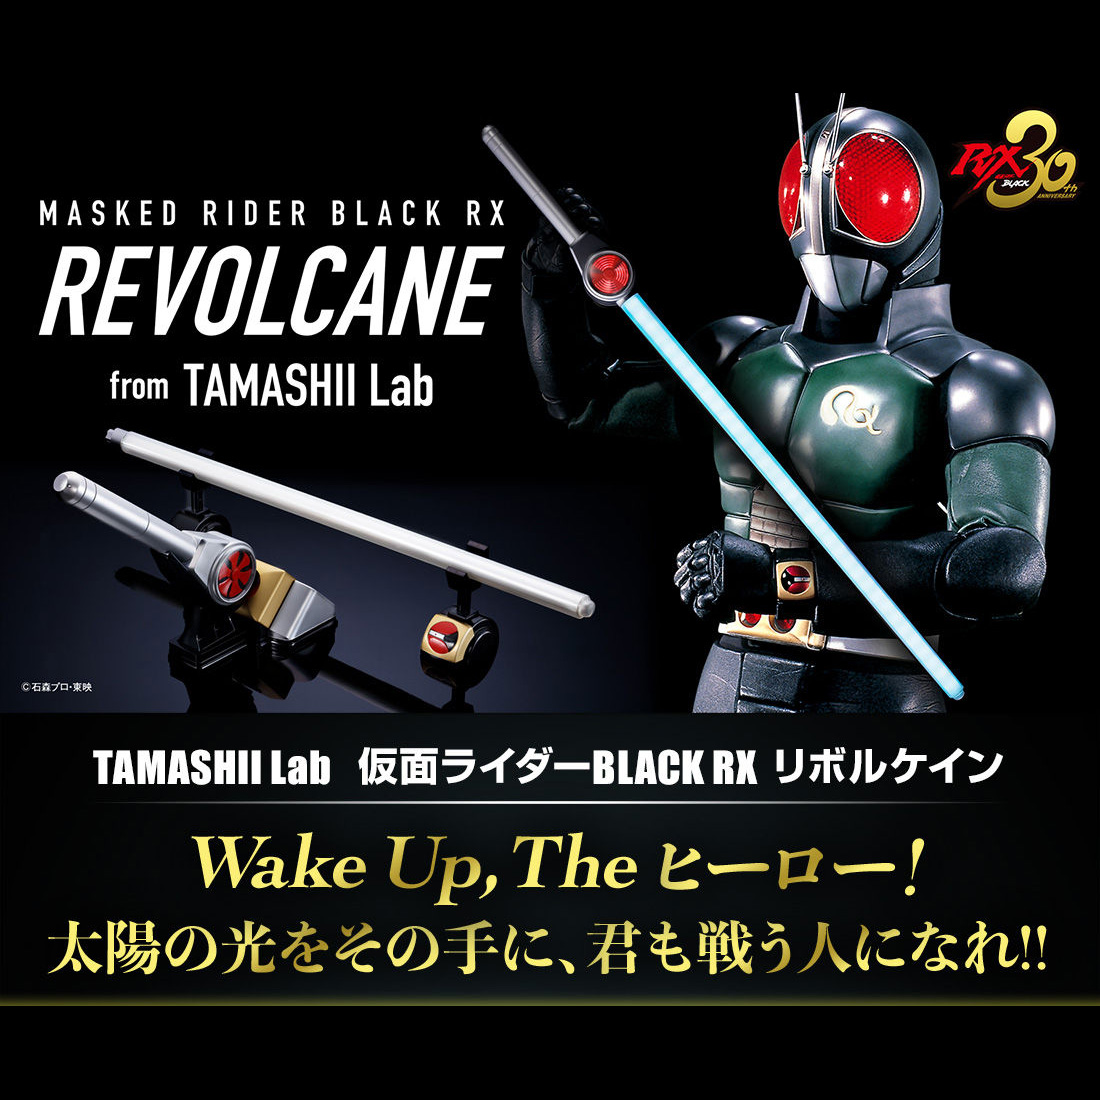 TAMASHII Lab 仮面ライダーBLACK RX『リボルケイン』